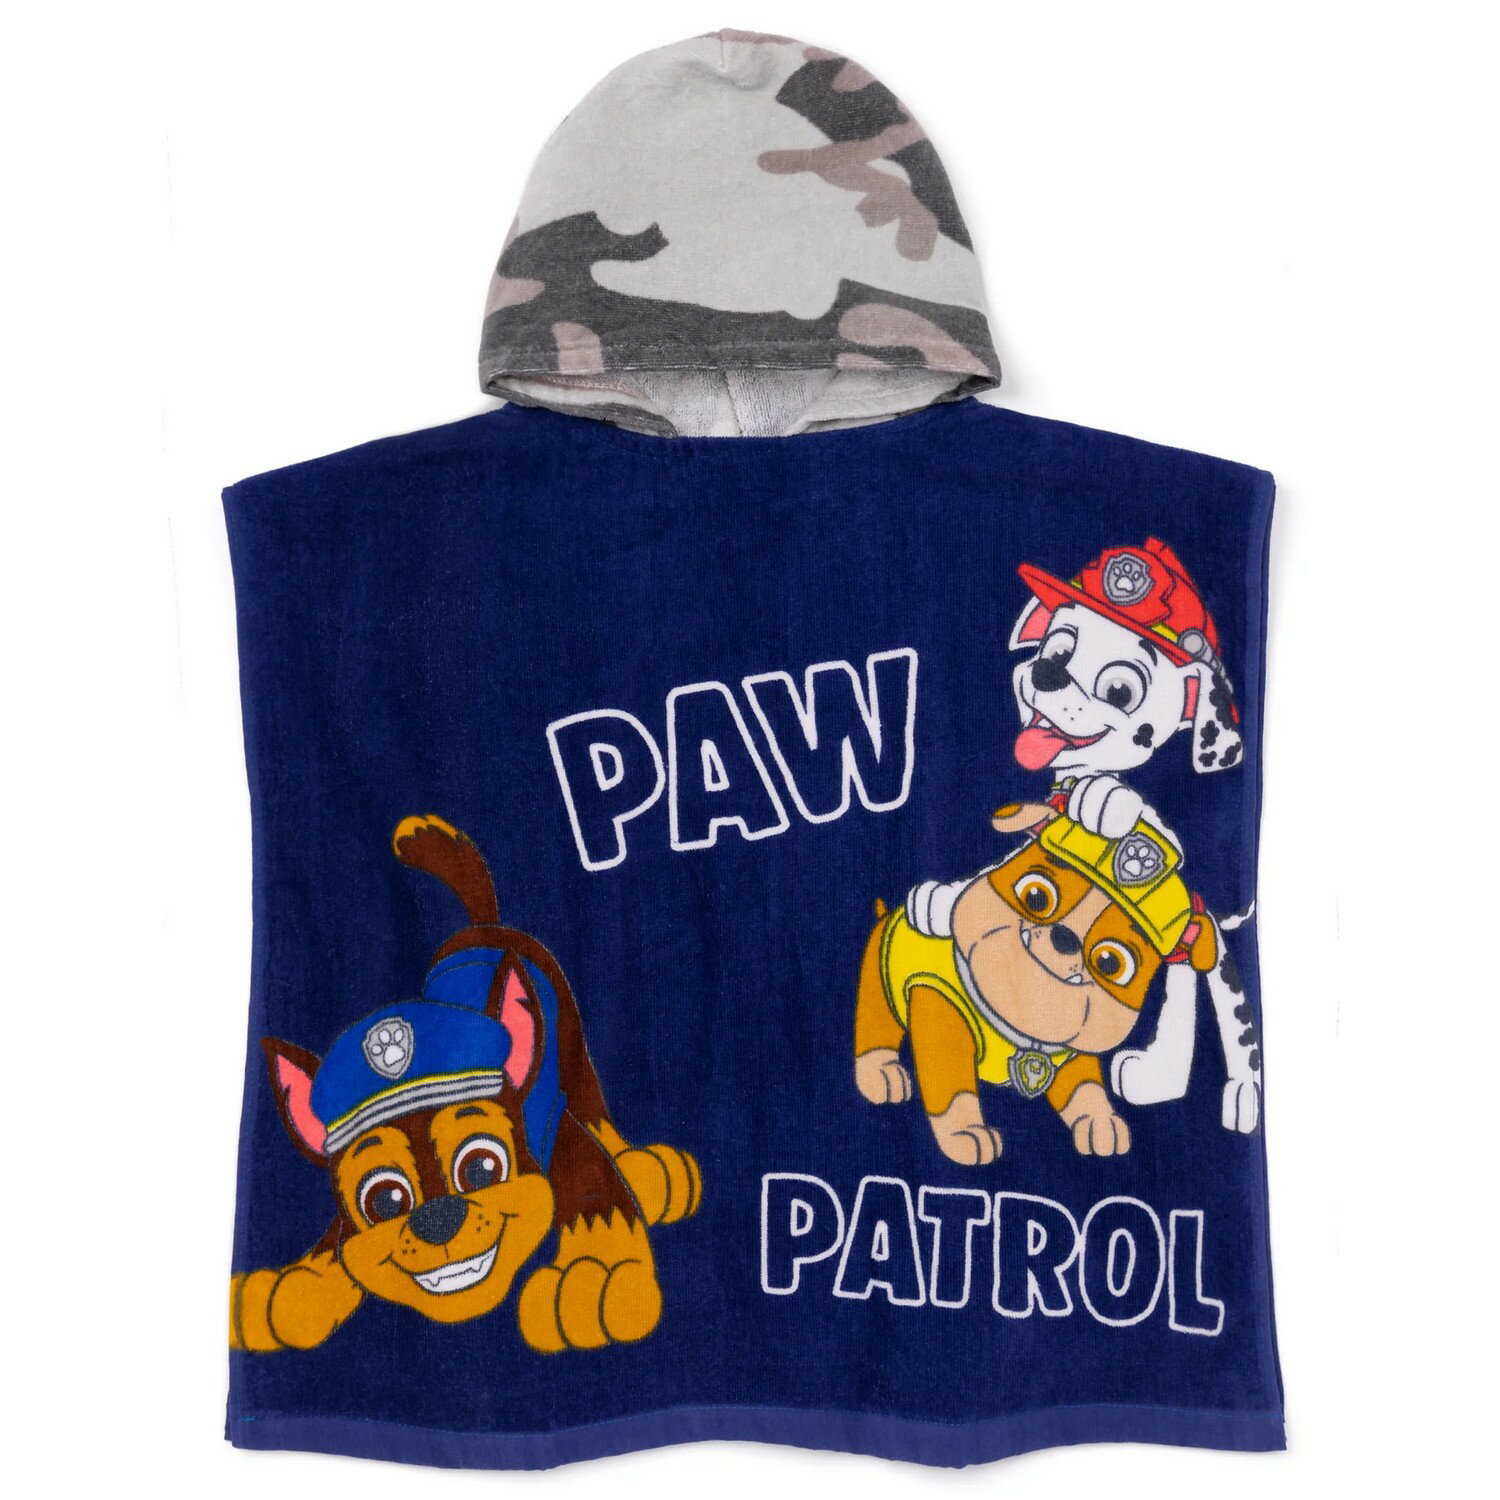 (パウ・パトロール) Paw Patrol オフィシャル商品 キッズ・子供 迷彩 フード付き タオル ポンチョ 【海外通販】